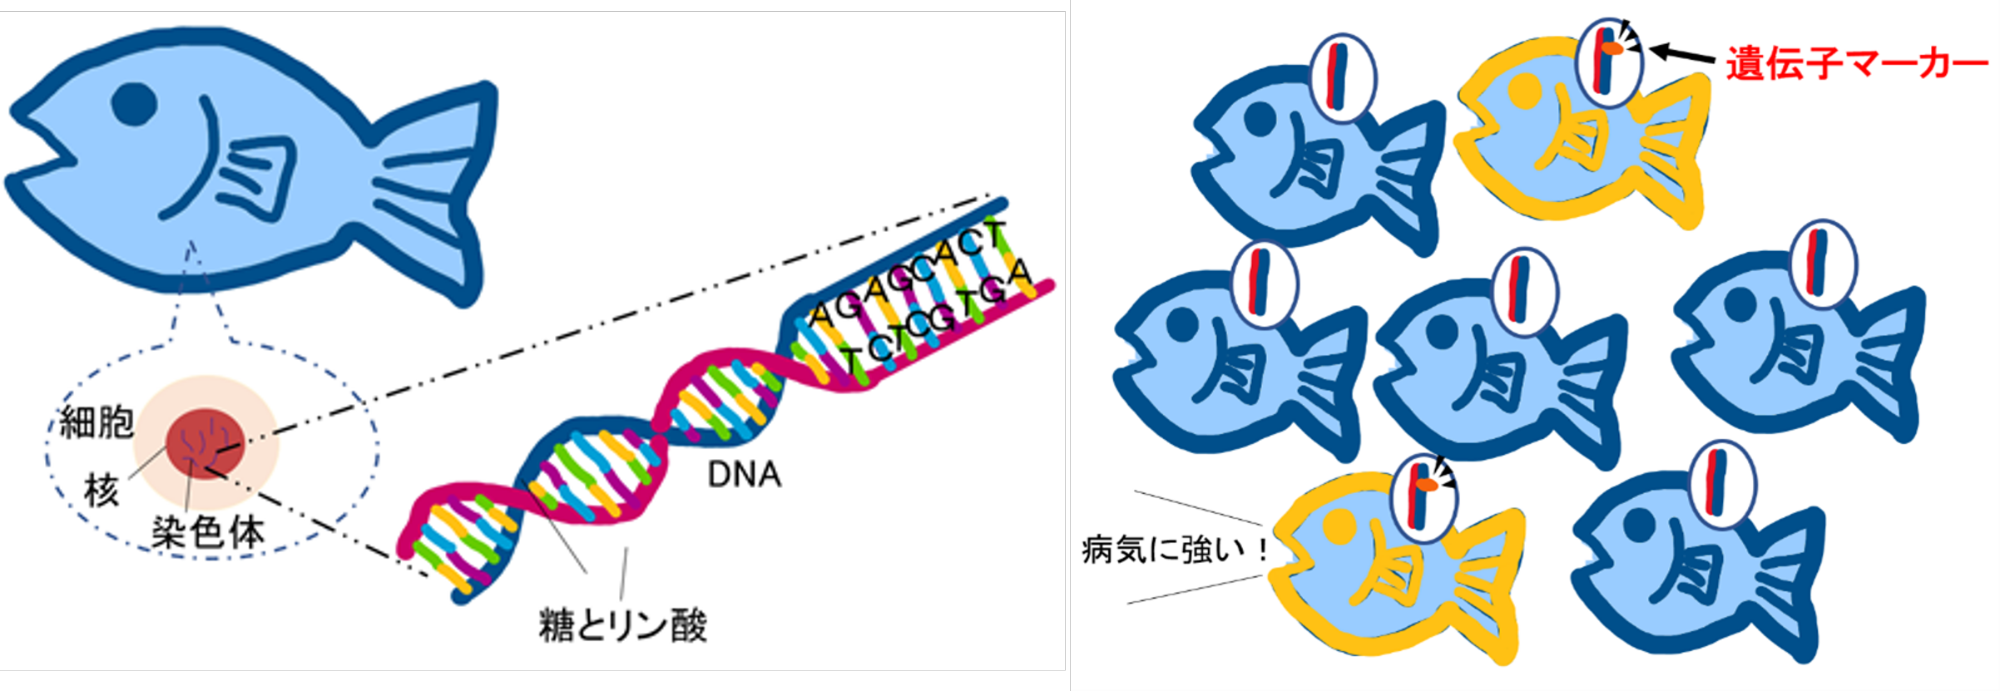 図2遺伝子マーカーのイメージ